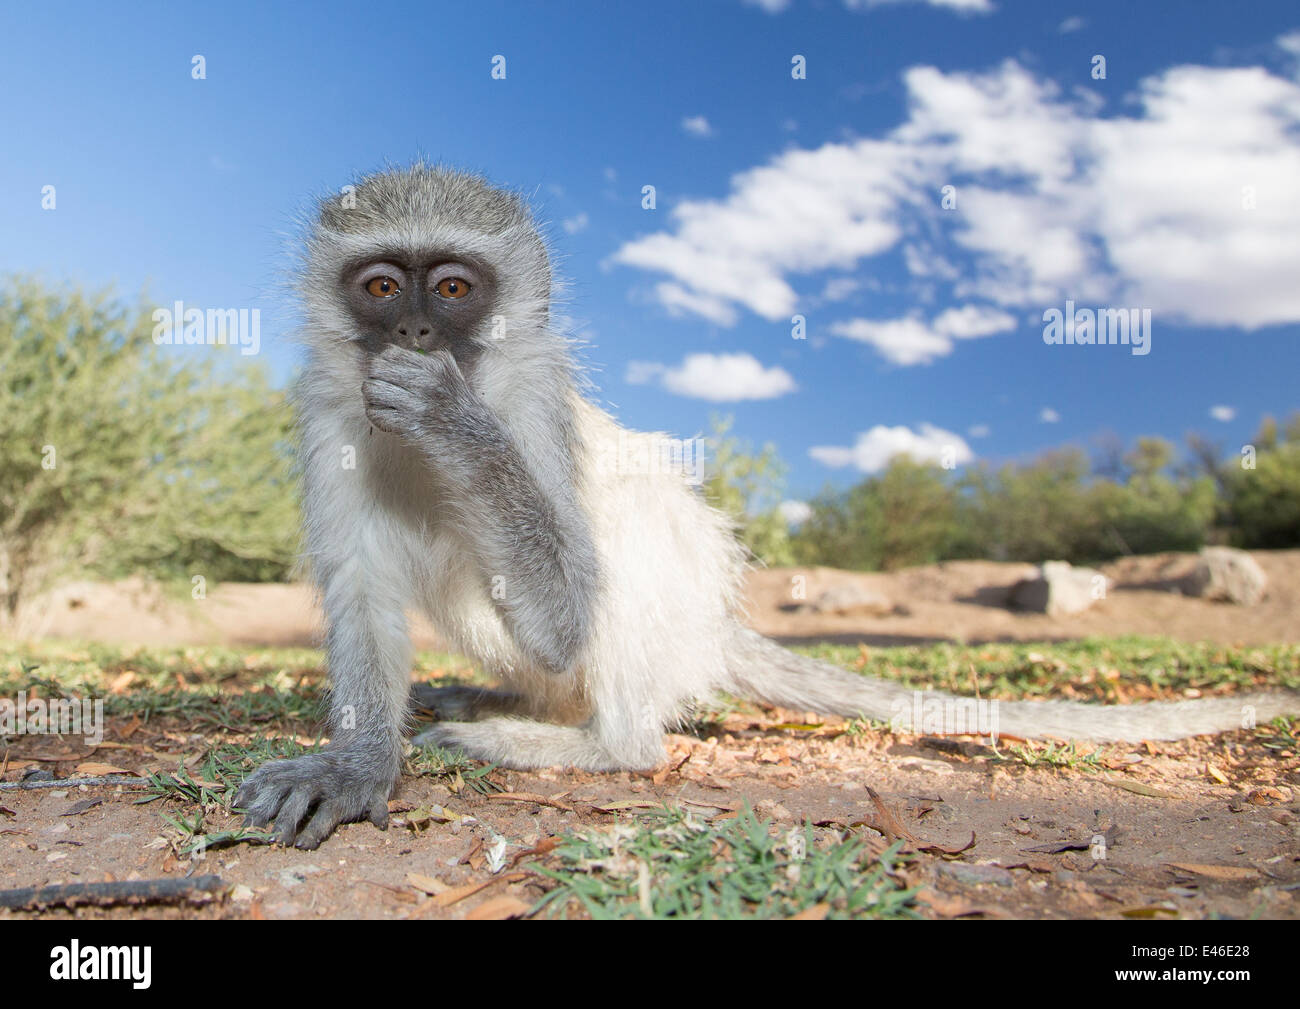 Nahaufnahme Foto eines sehr neugierigen Affen geschnappt just-in-Time, wie der Affe in die Linse geschaut, halten Sie eine Hand-ove Stockfoto